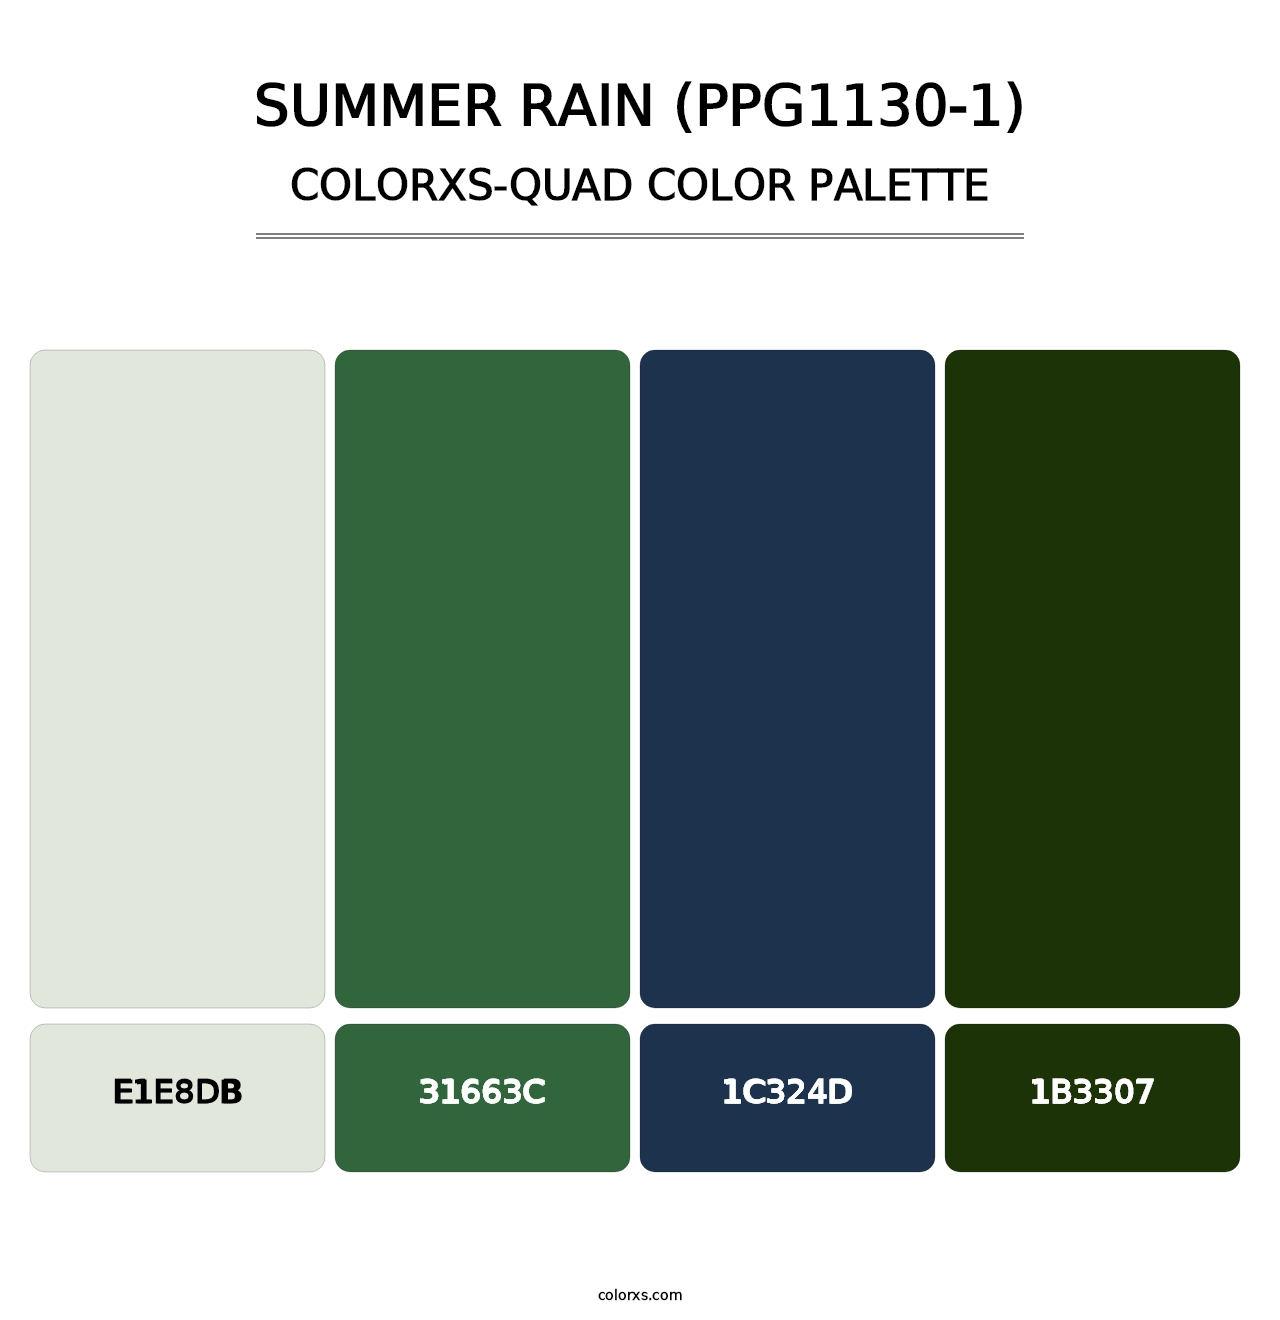 Summer Rain (PPG1130-1) - Colorxs Quad Palette